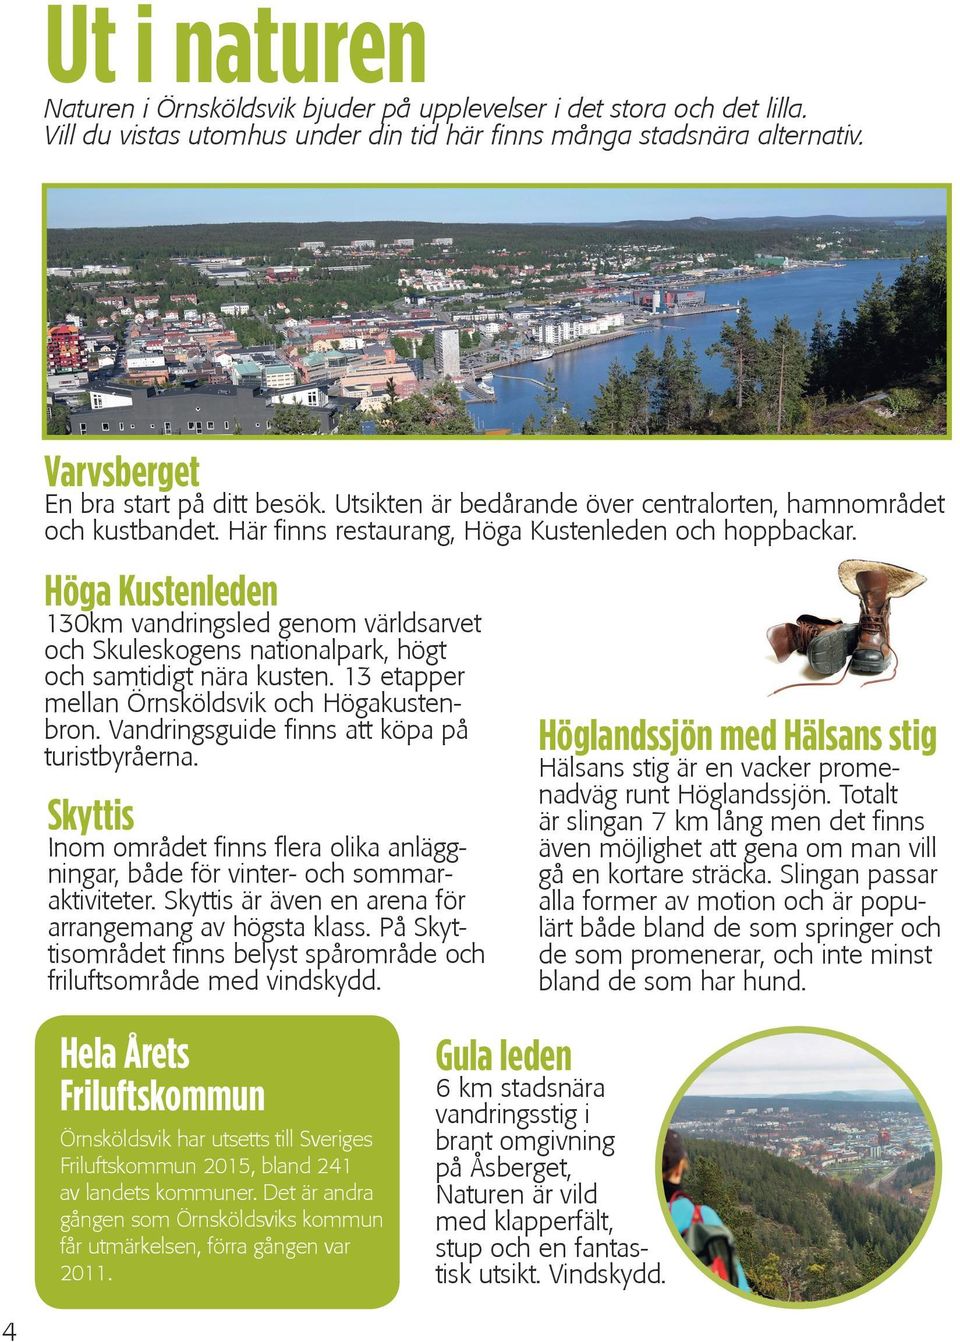 Höga Kustenleden 130km vandringsled genom världsarvet och Skuleskogens nationalpark, högt och samtidigt nära kusten. 13 etapper mellan Örnsköldsvik och Högakustenbron.